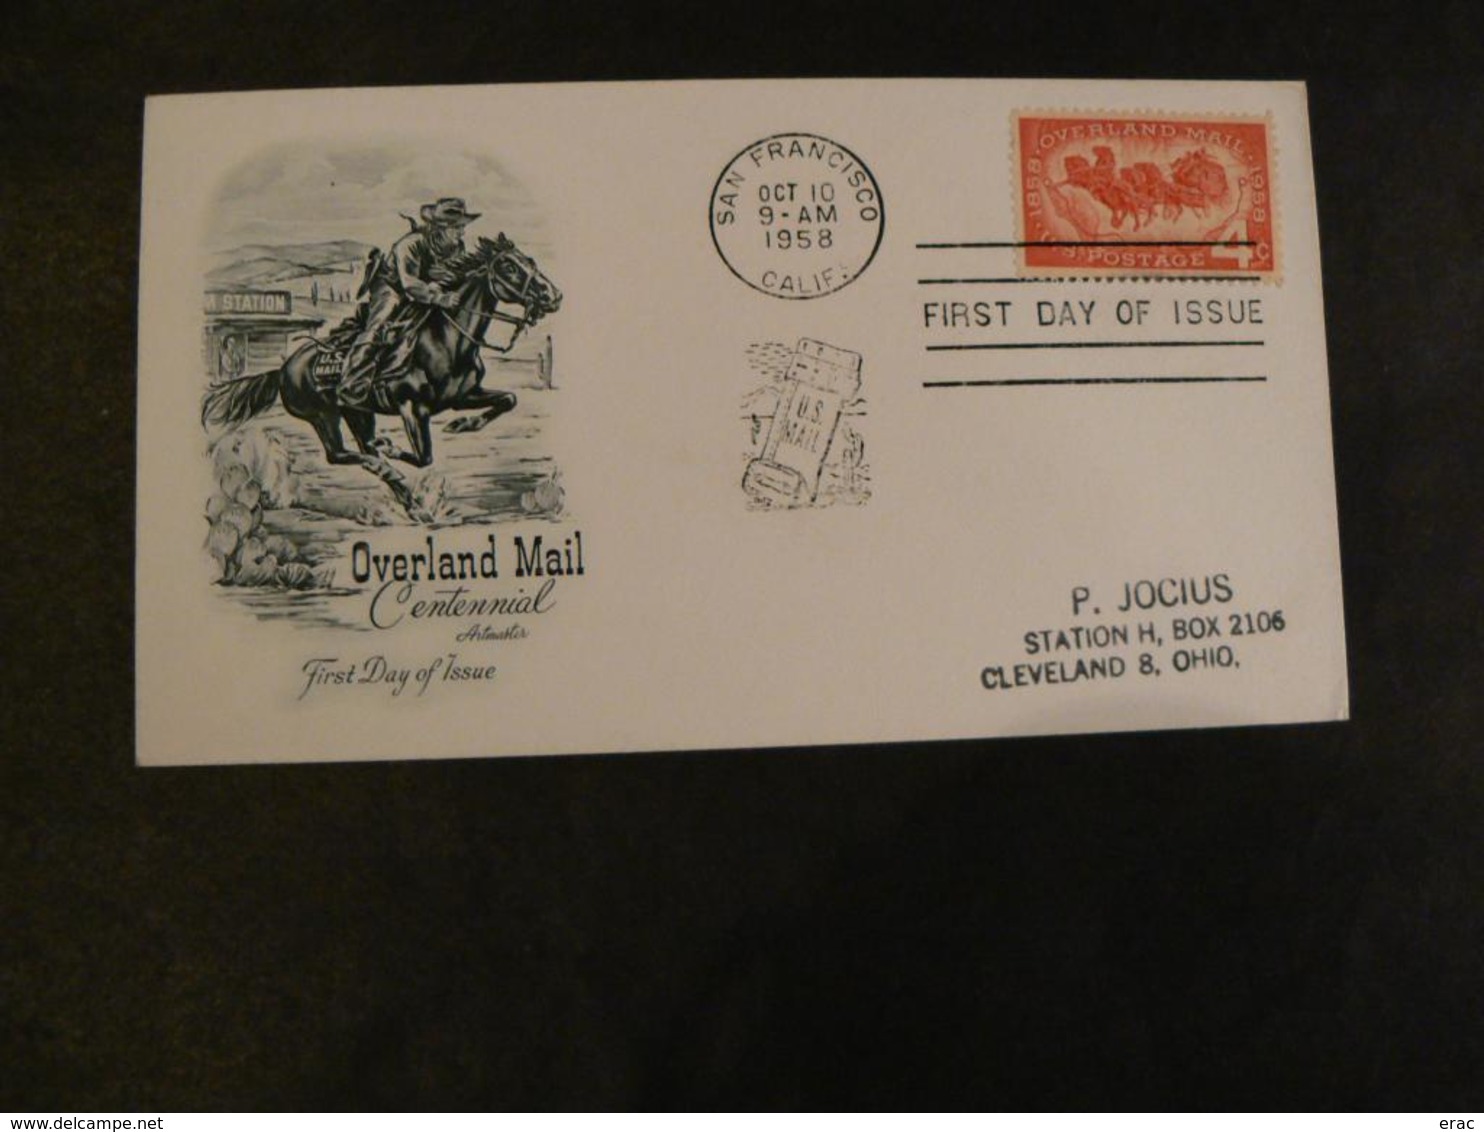 Etats-Unis (USA) - 6 enveloppes (dont 1 du 19ème avec correspondance) - Thème transports à chevaux - Horse